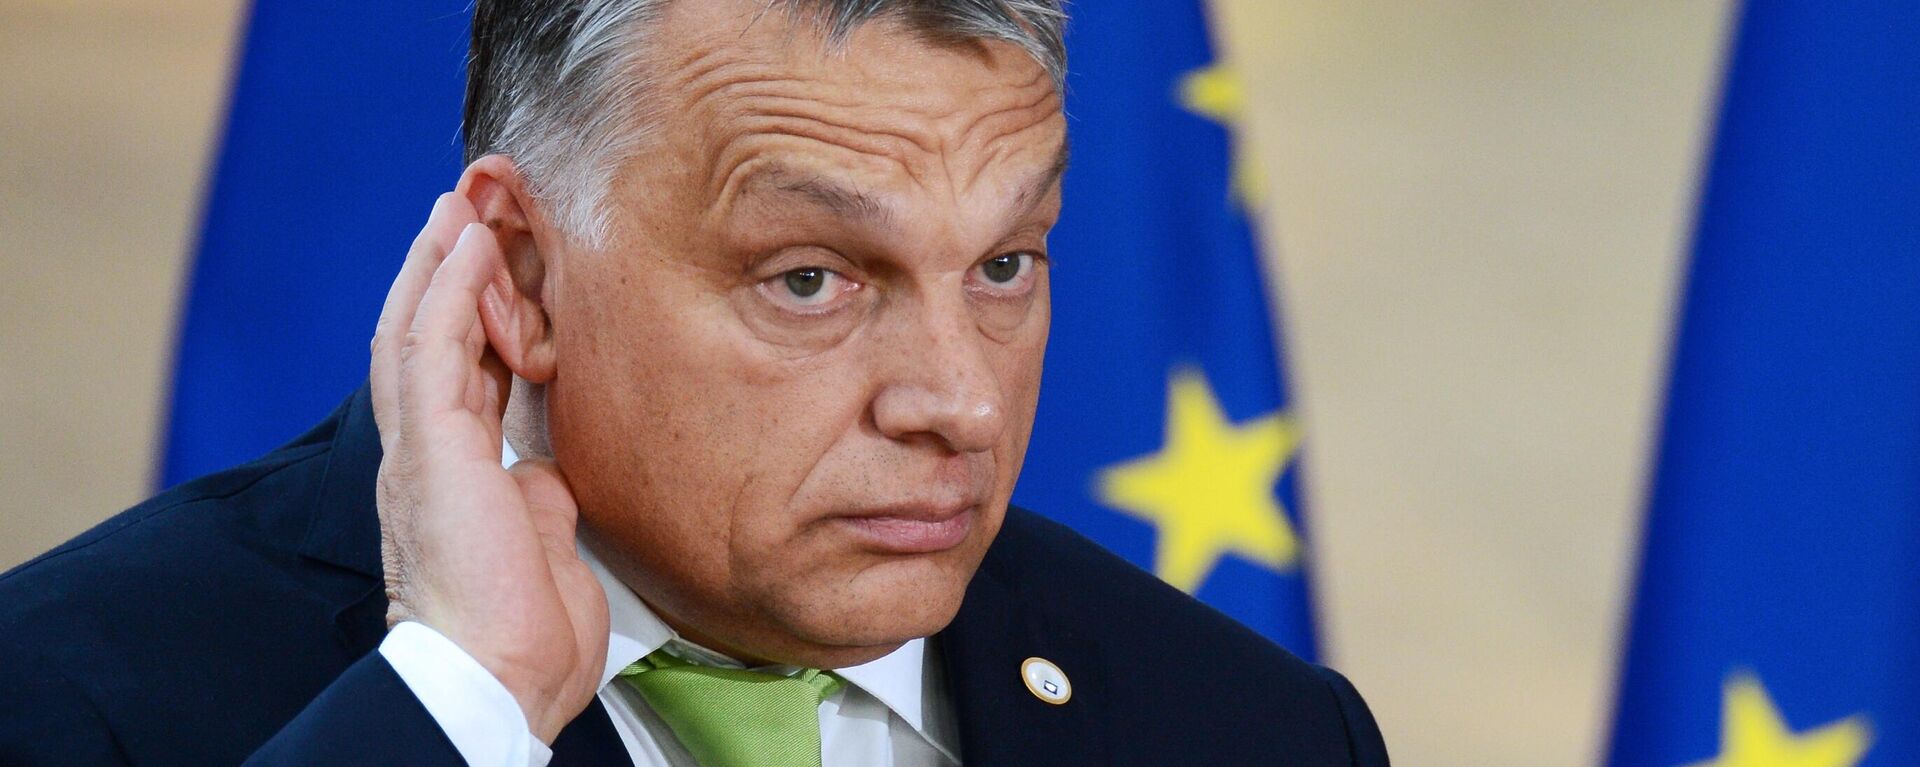 Премьер-министр Венгрии Виктор Орбан на саммите государств и правительств стран-участниц Европейского союза в Брюсселе - Sputnik Латвия, 1920, 26.07.2022